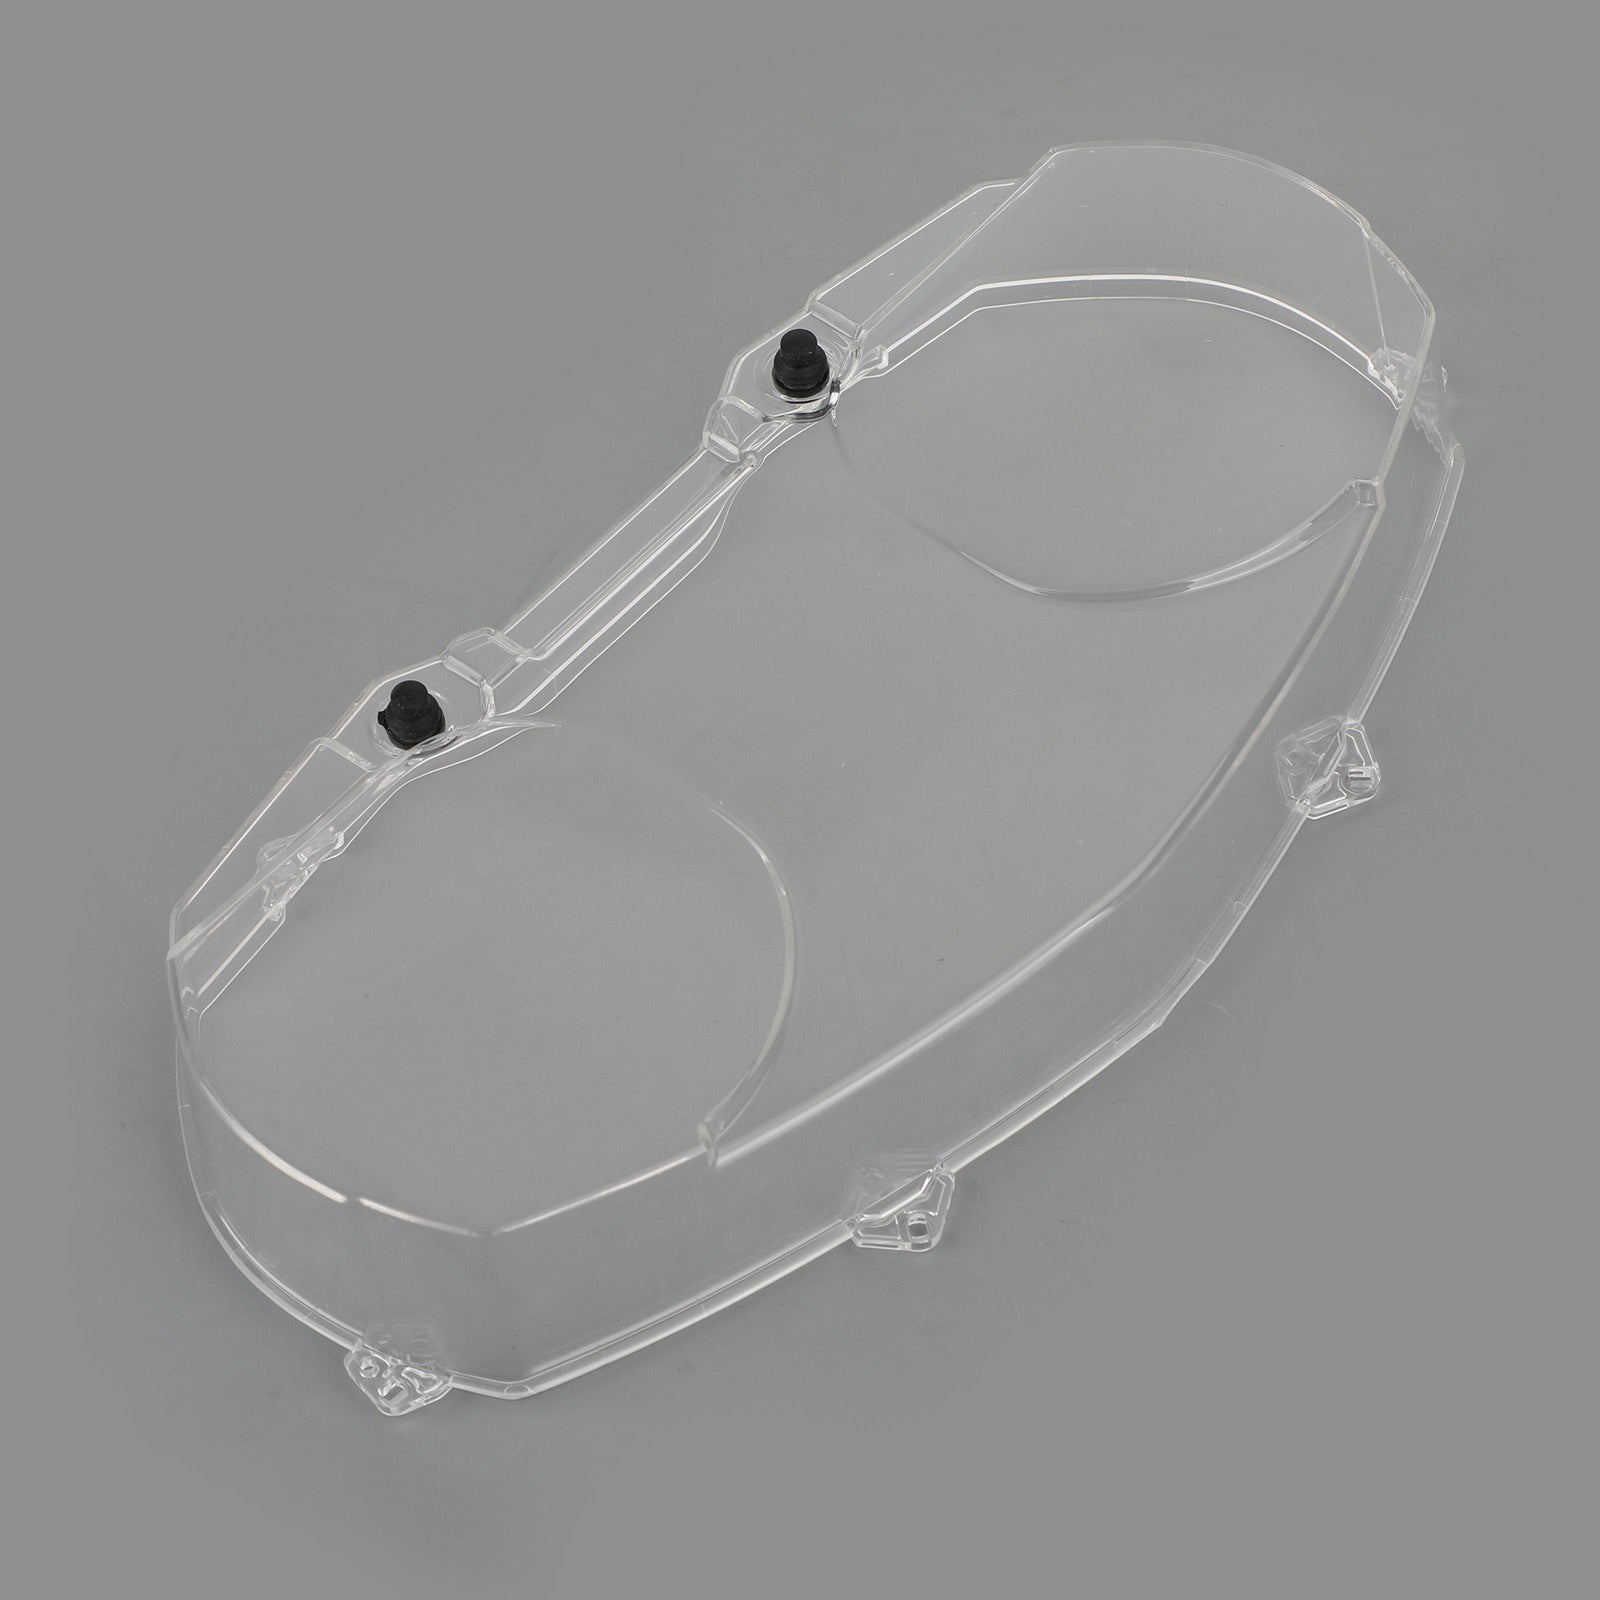 Protector de tapa de velocímetro transparente para BMW R1200RT 2005-2009 genérico